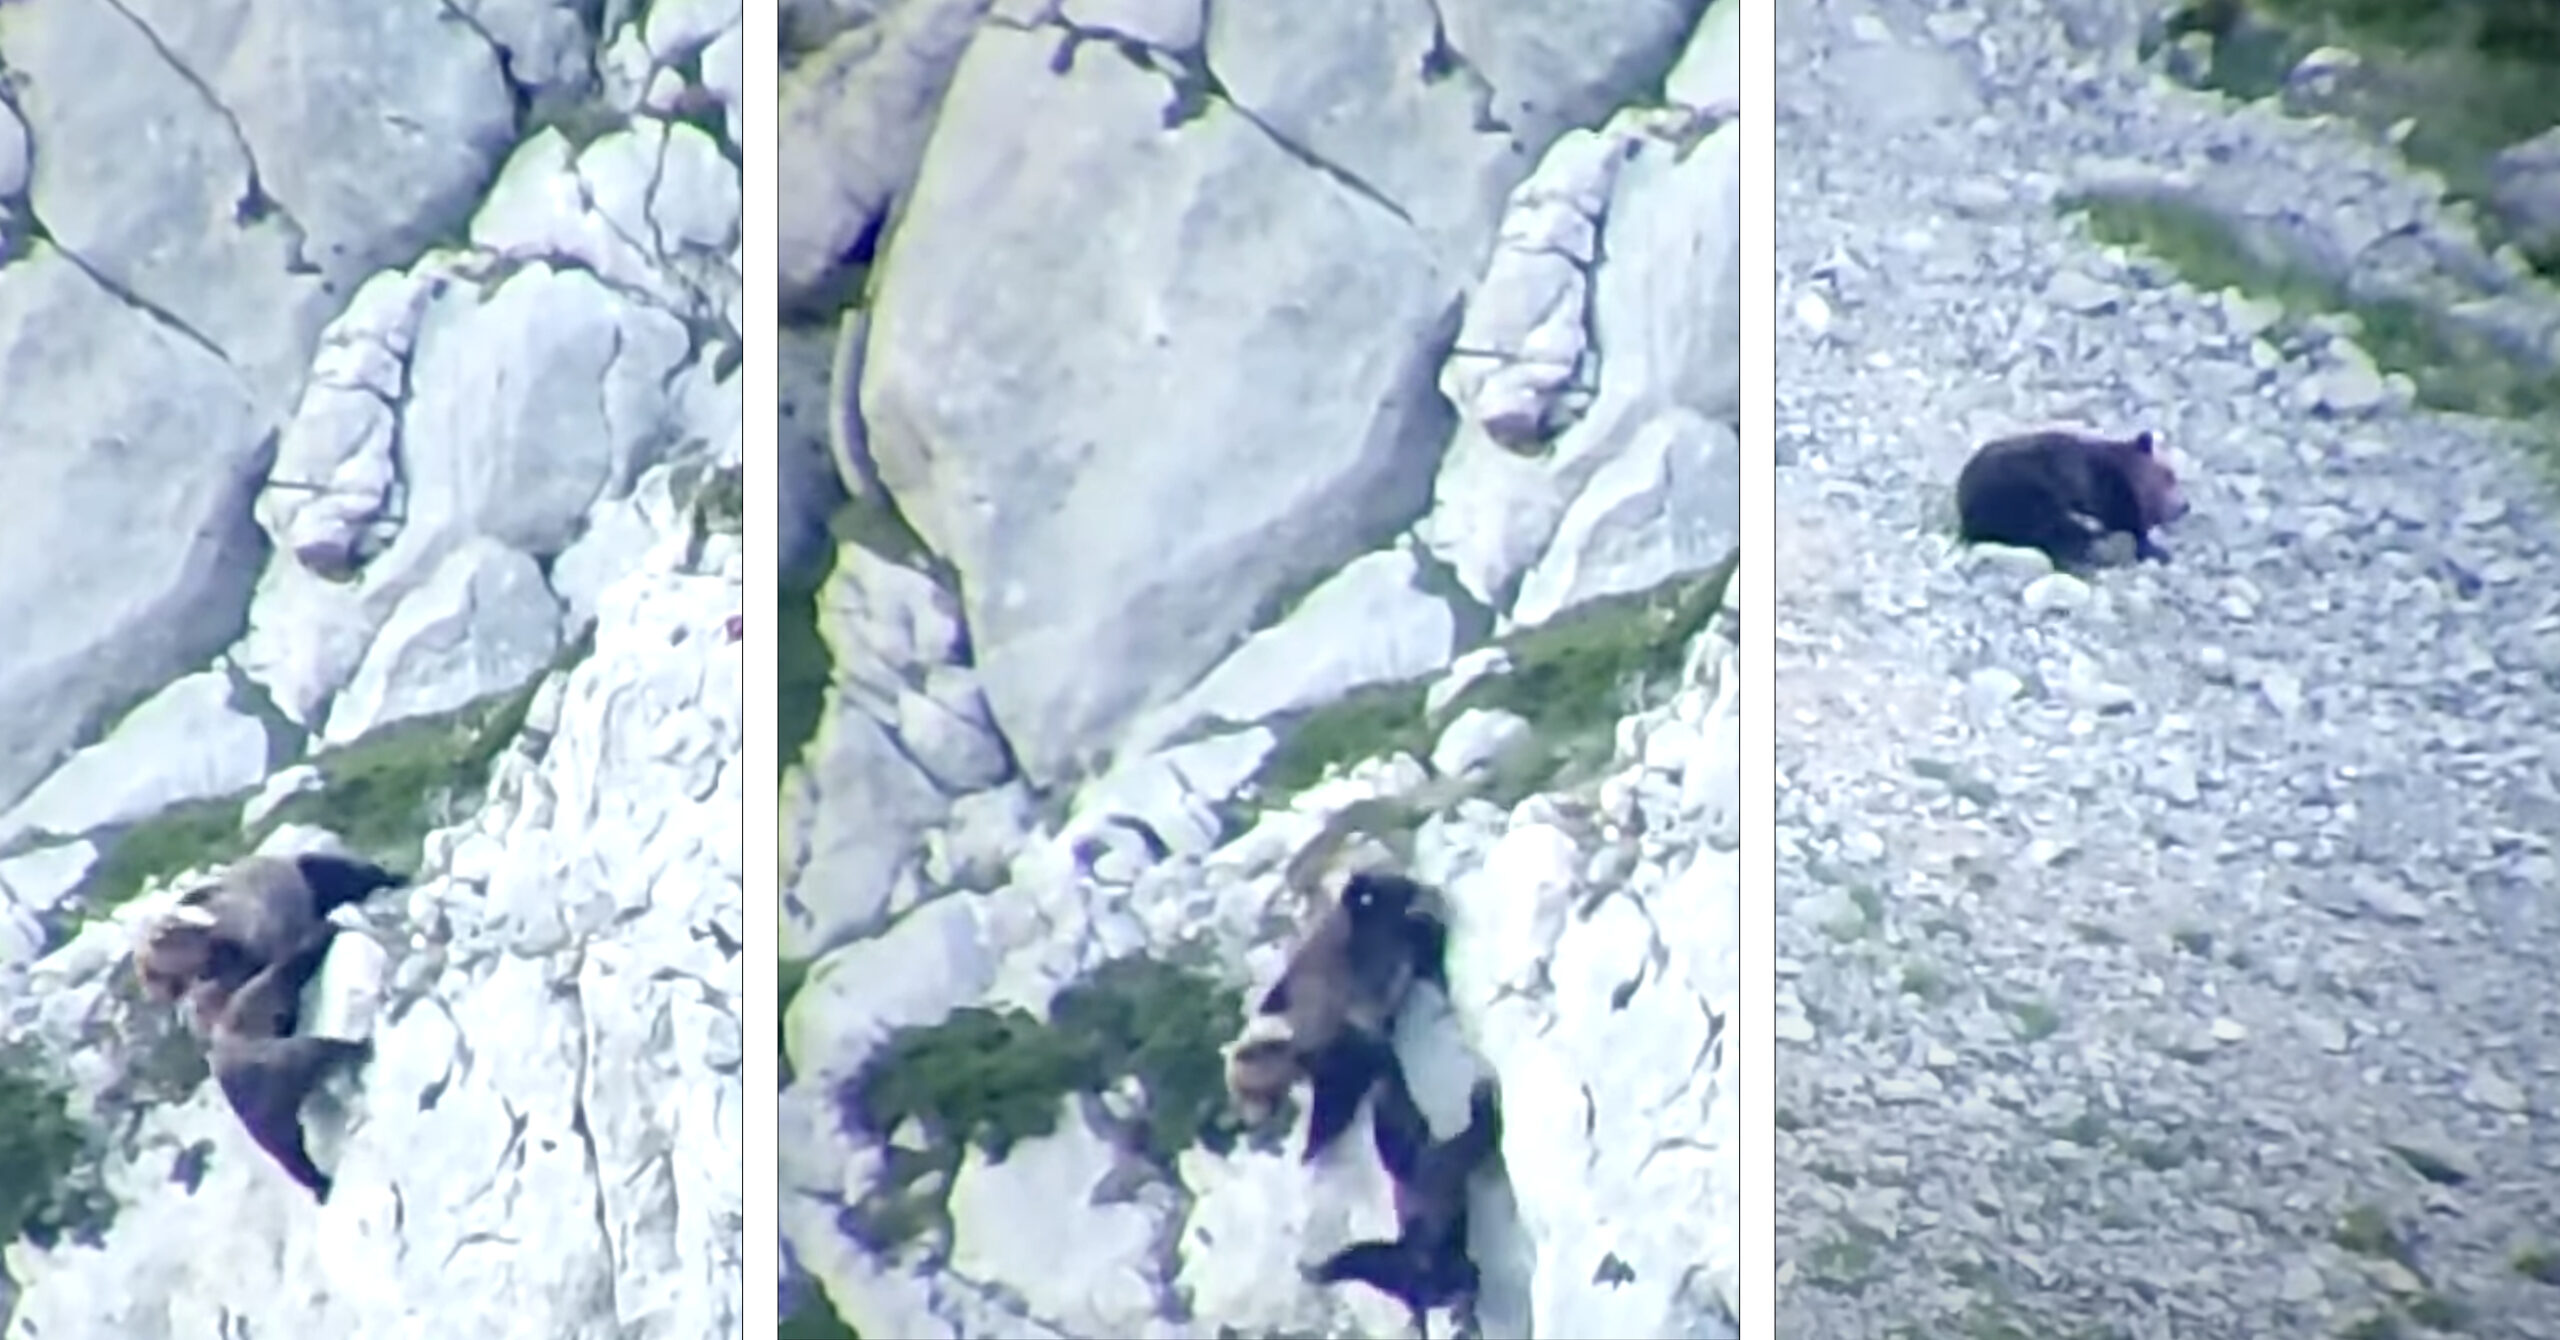 Brown bears fall off mountain.